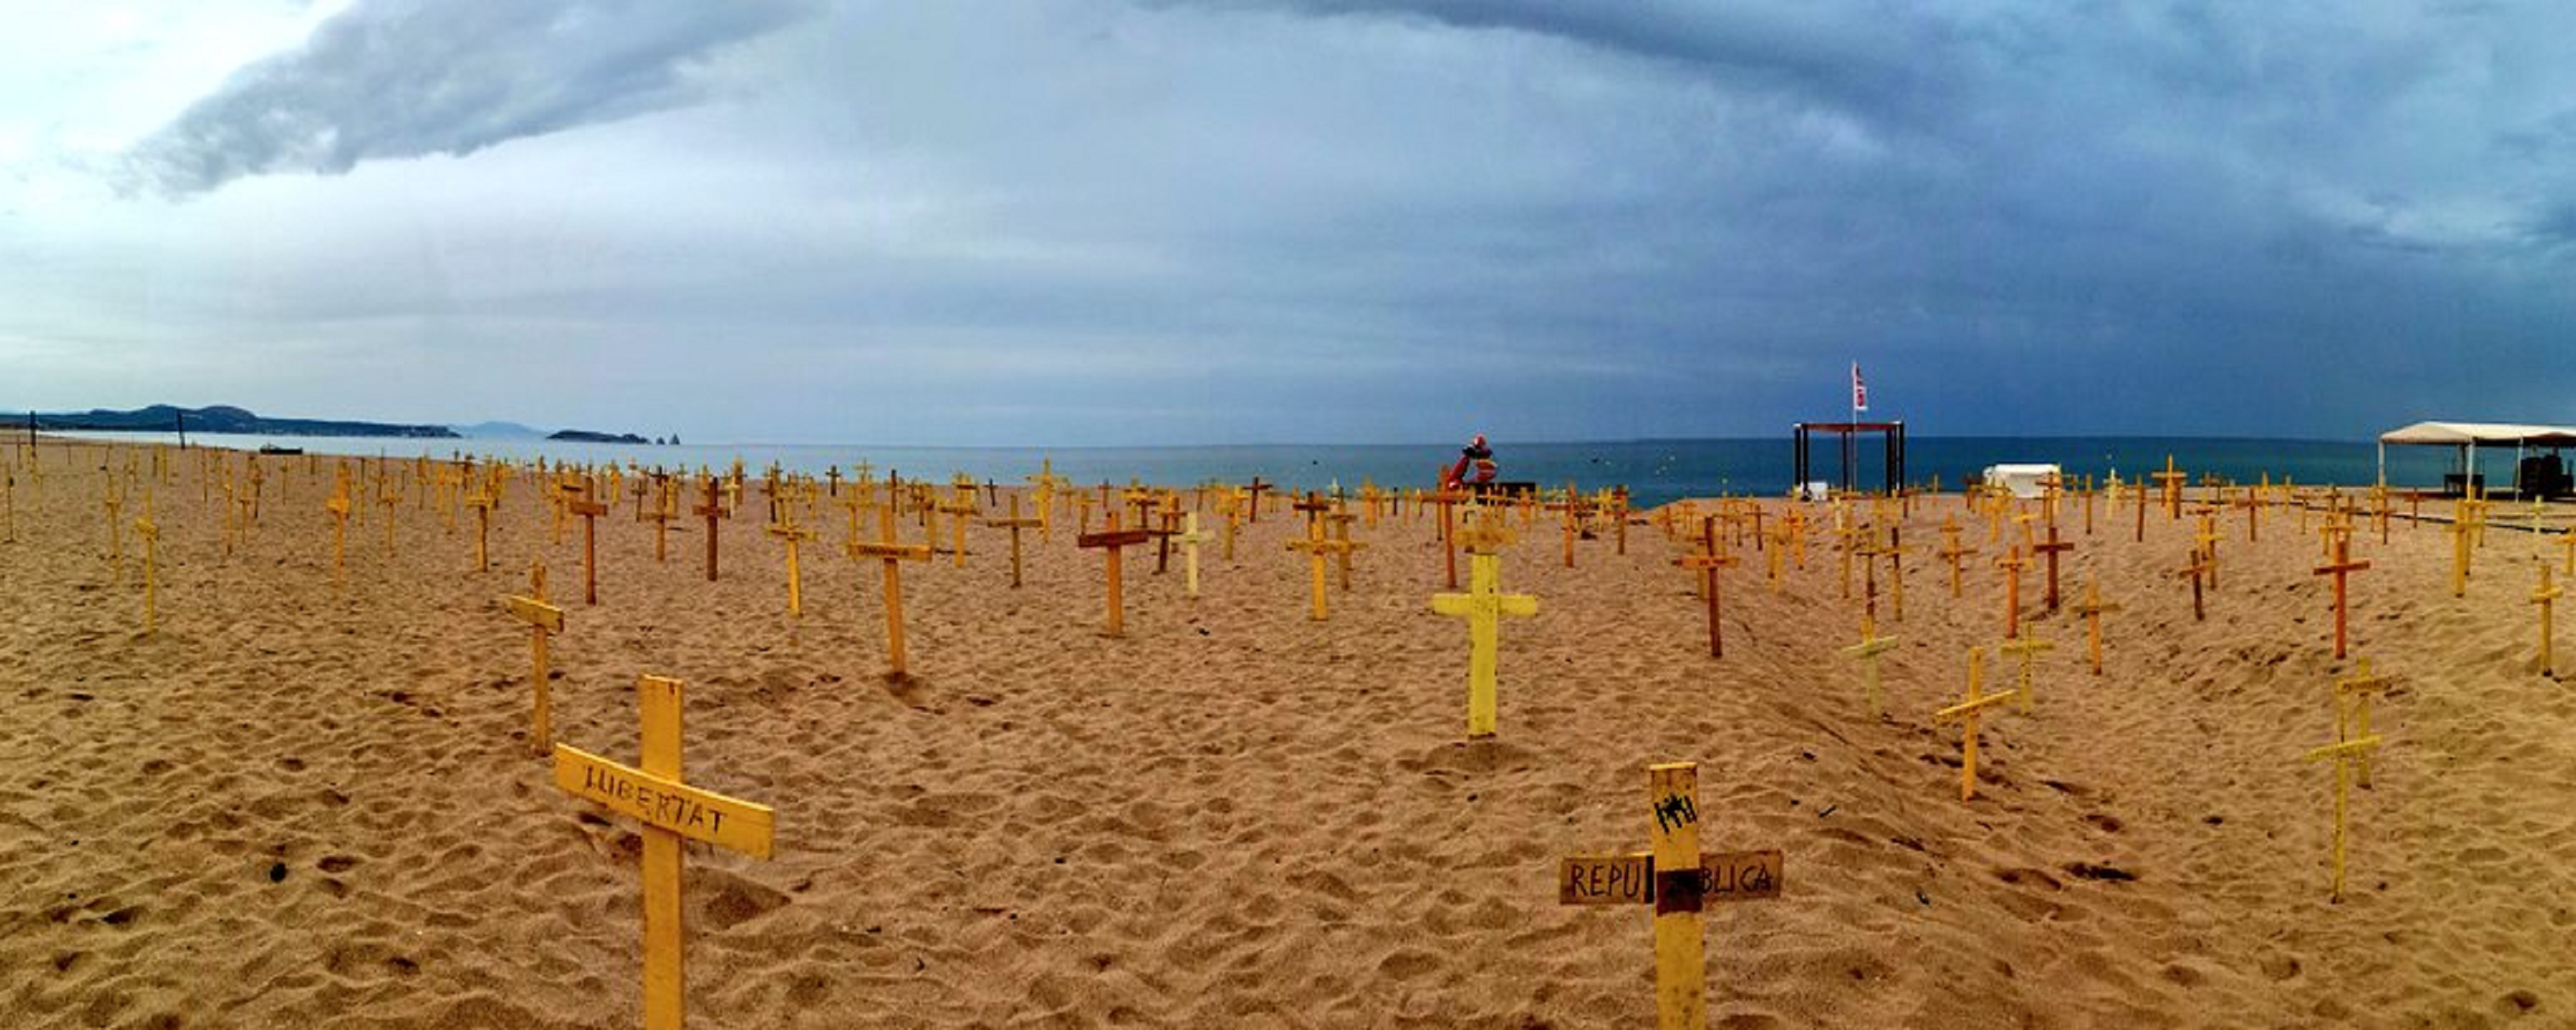 Vídeo: Macroplantada de creus a la Costa Brava